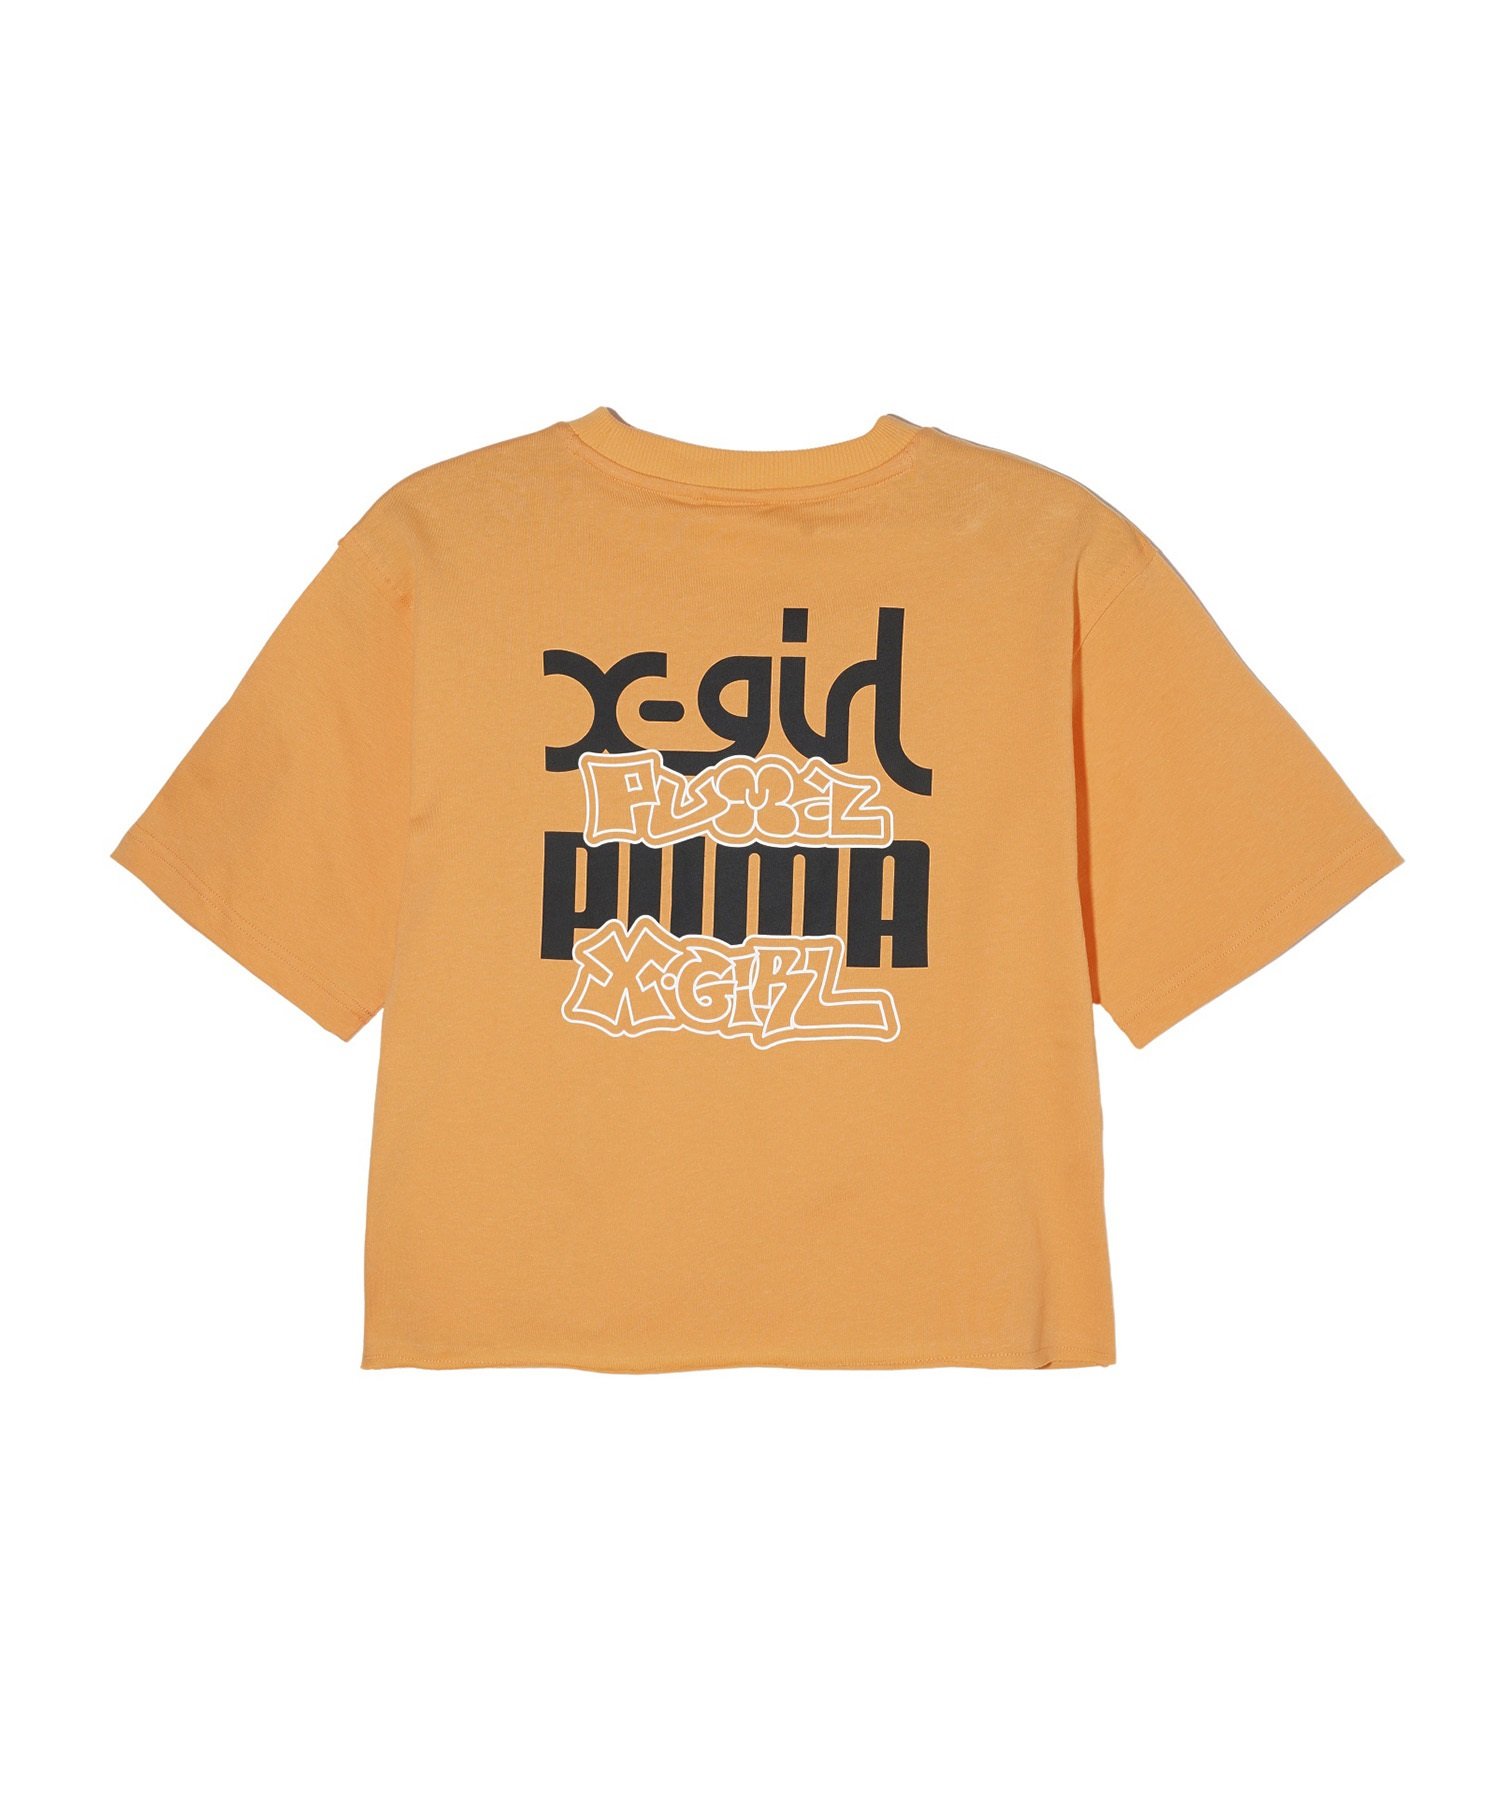 【マトメガイ対象】PUMA プーマ × X-GIRL エックスガール コラボ ウィメンズ グラフィック 半袖 Tシャツ レディース 624723(82-S)